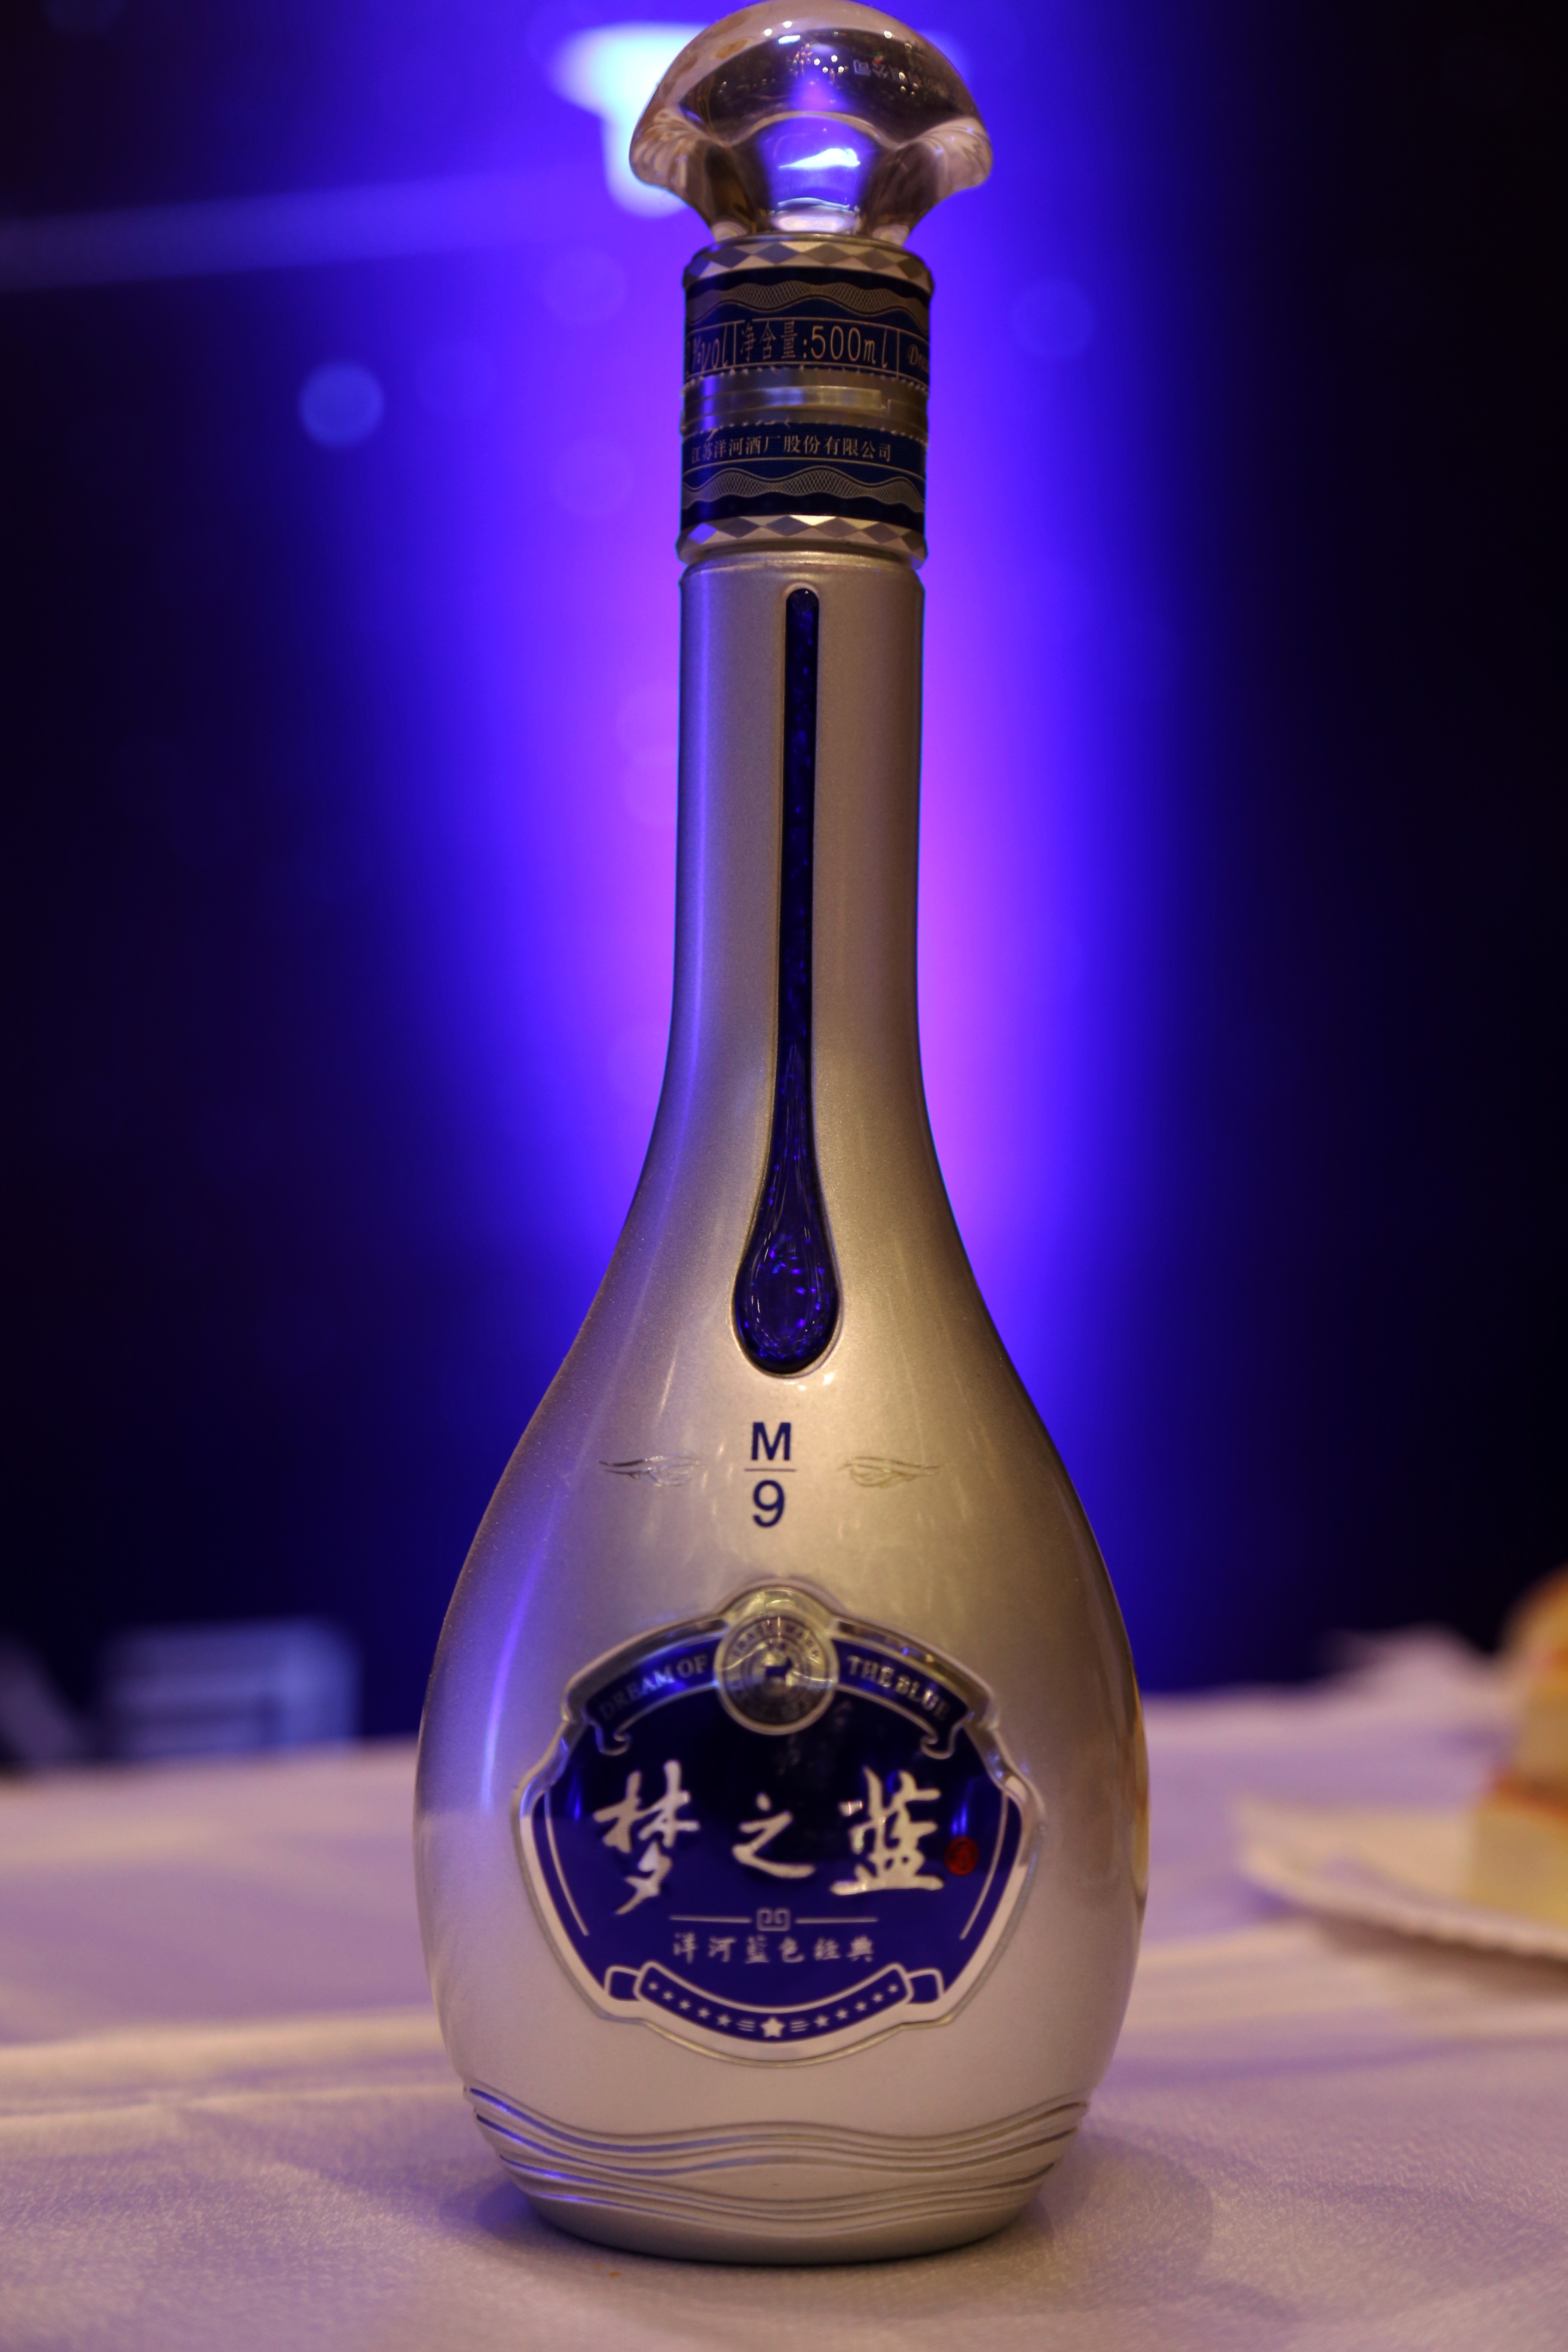 洋河梦之蓝是洋河蓝色经典系列酒其中的一个型号,其他的是洋河海之蓝